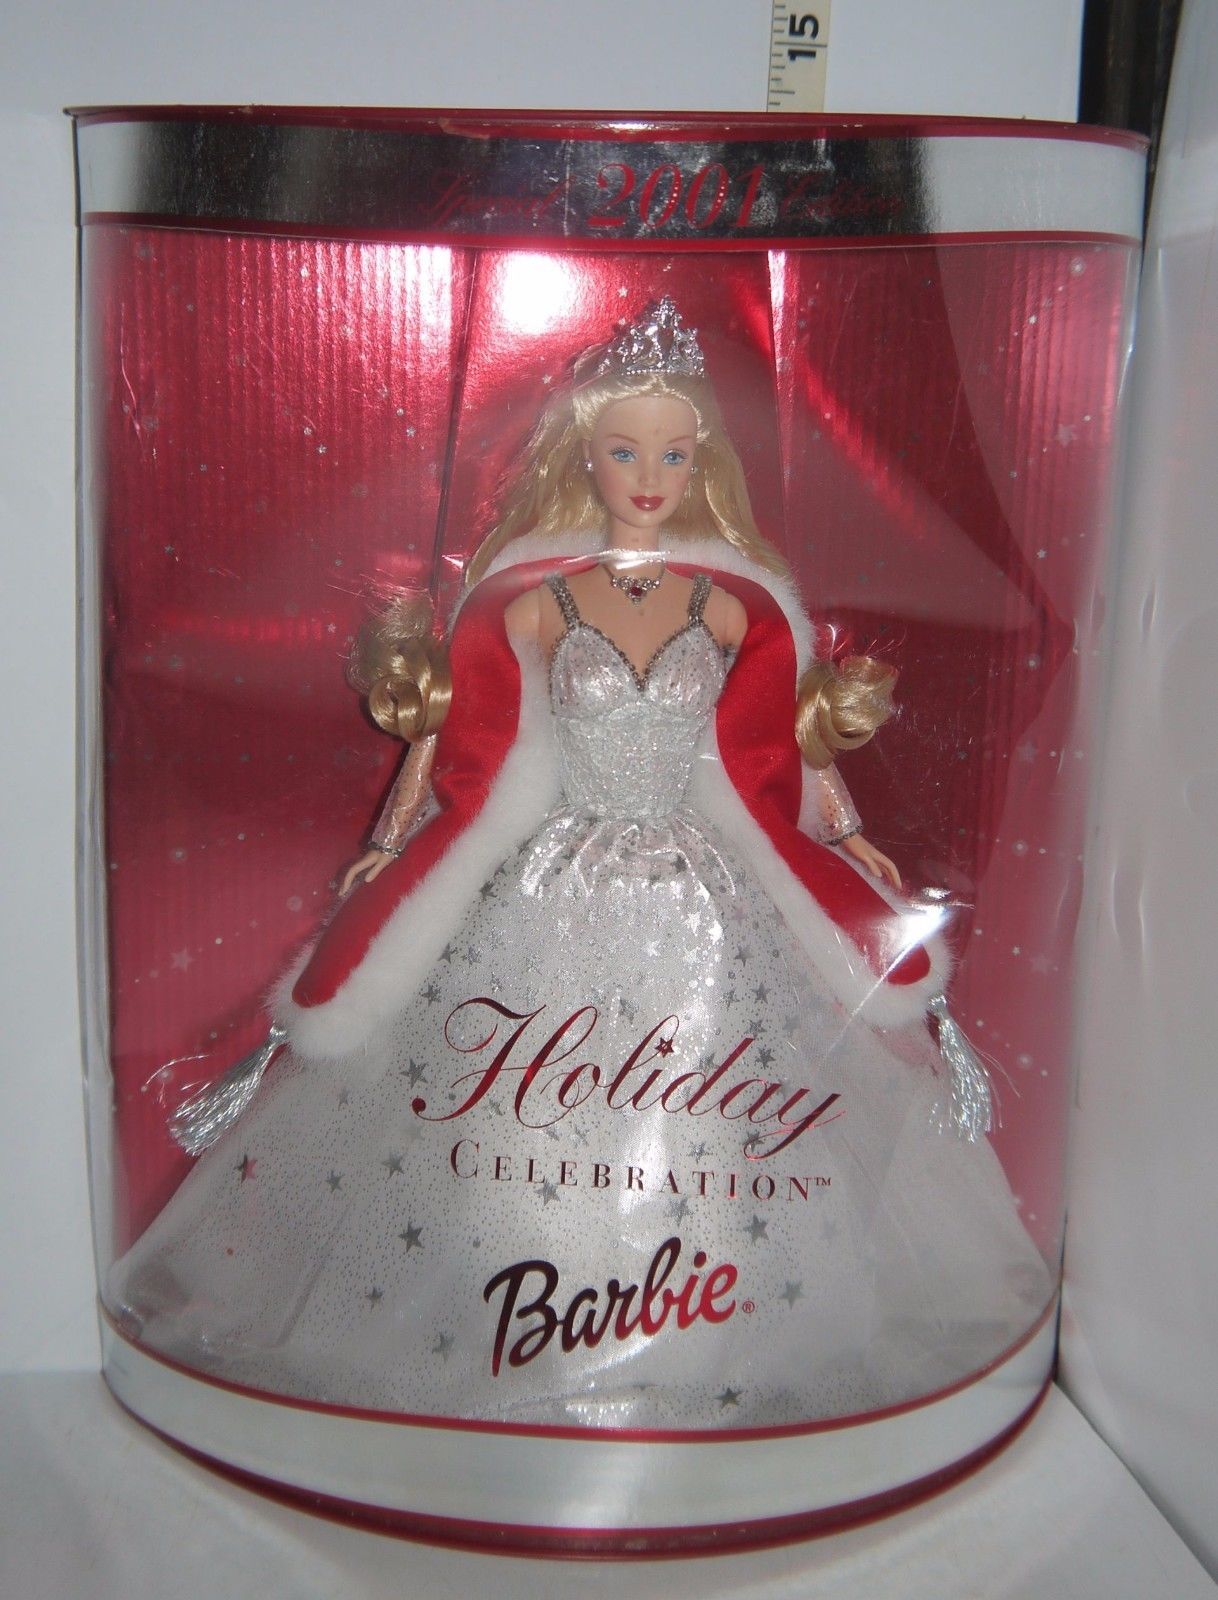 2001 holiday celebration barbie worth